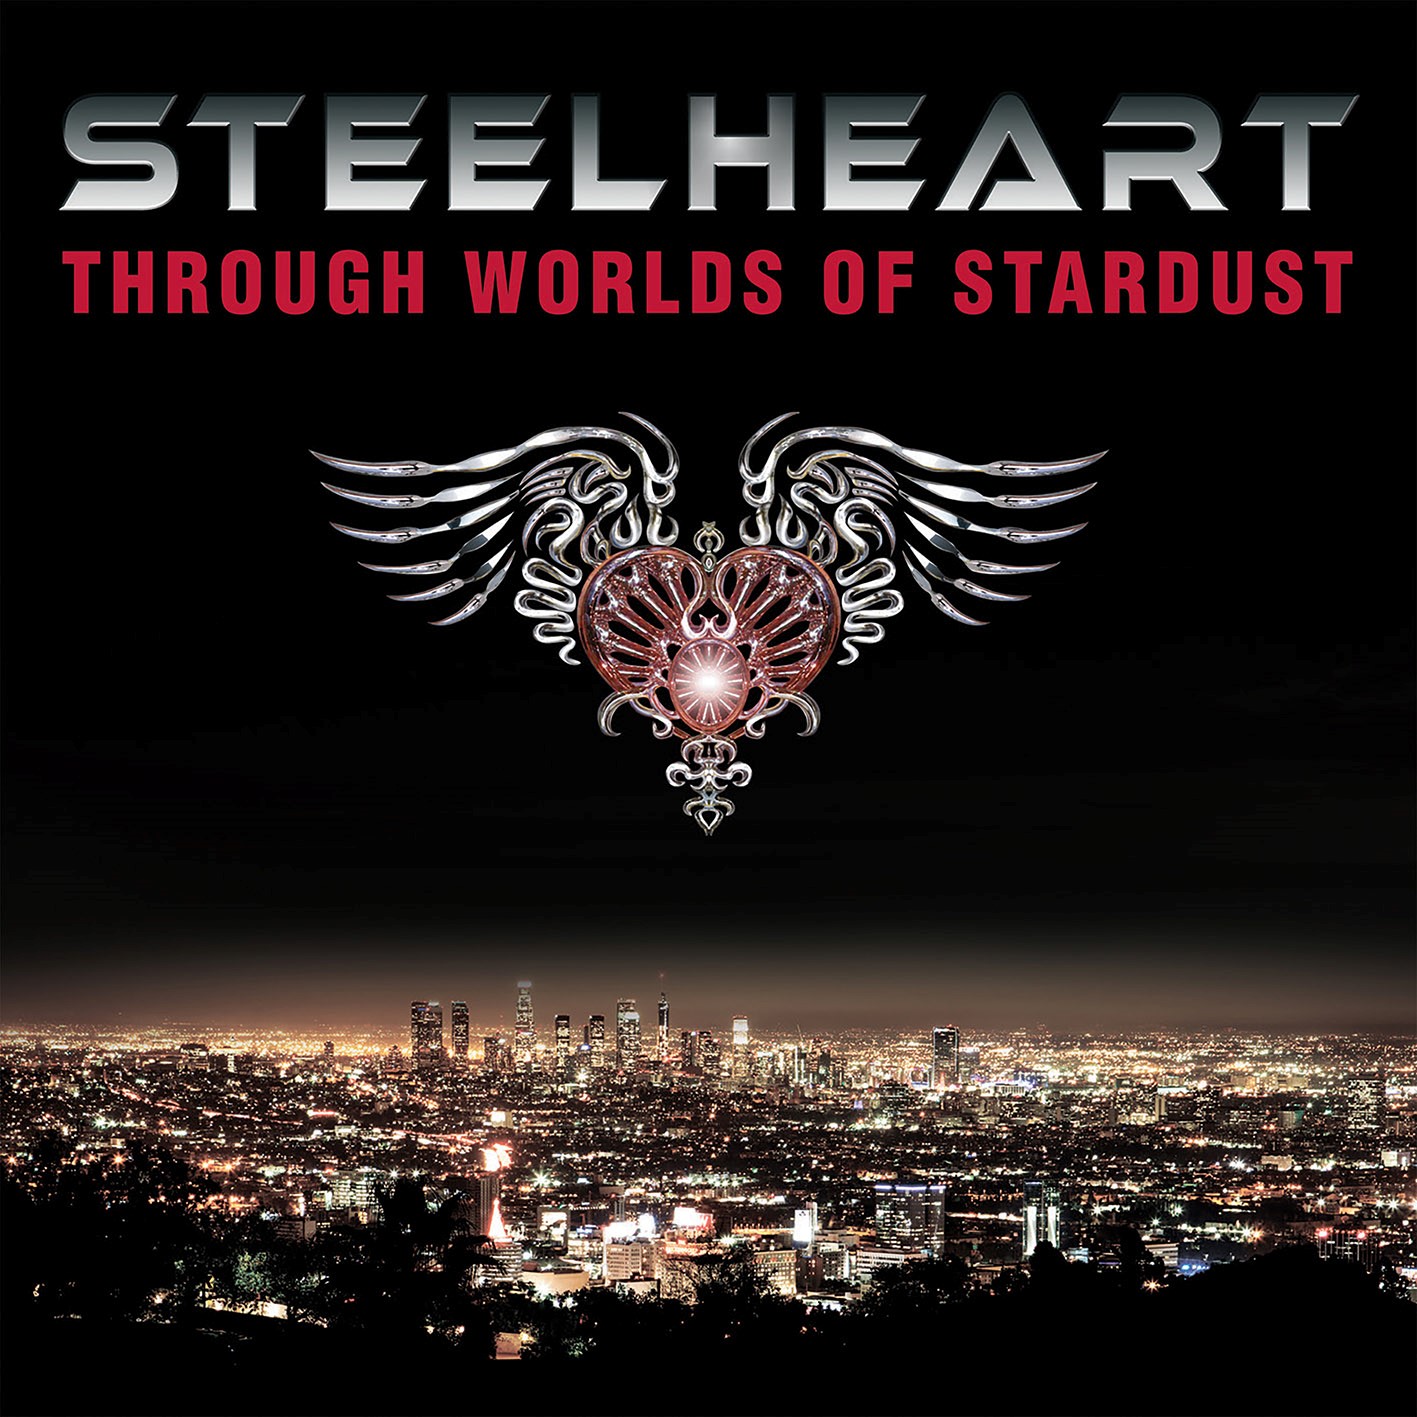 Steelheart - Through Worlds Of Stardust - CD